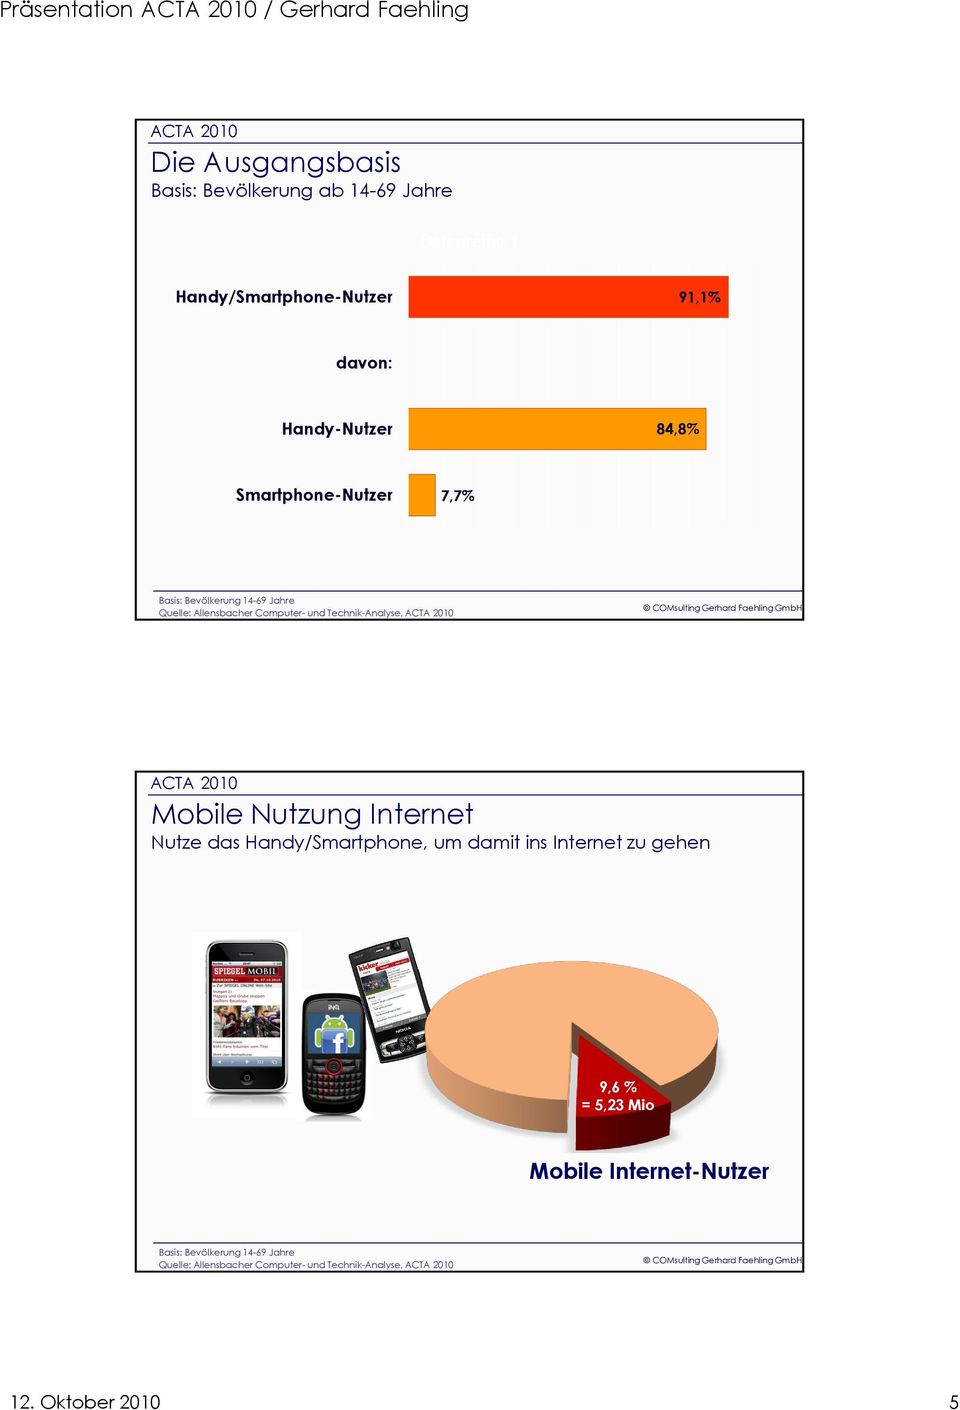 Technik-Analyse, Mobile Nutzung Internet Nutze das Handy/Smartphone, um damit ins Internet zu gehen 9,6 % = 5,23 Mio